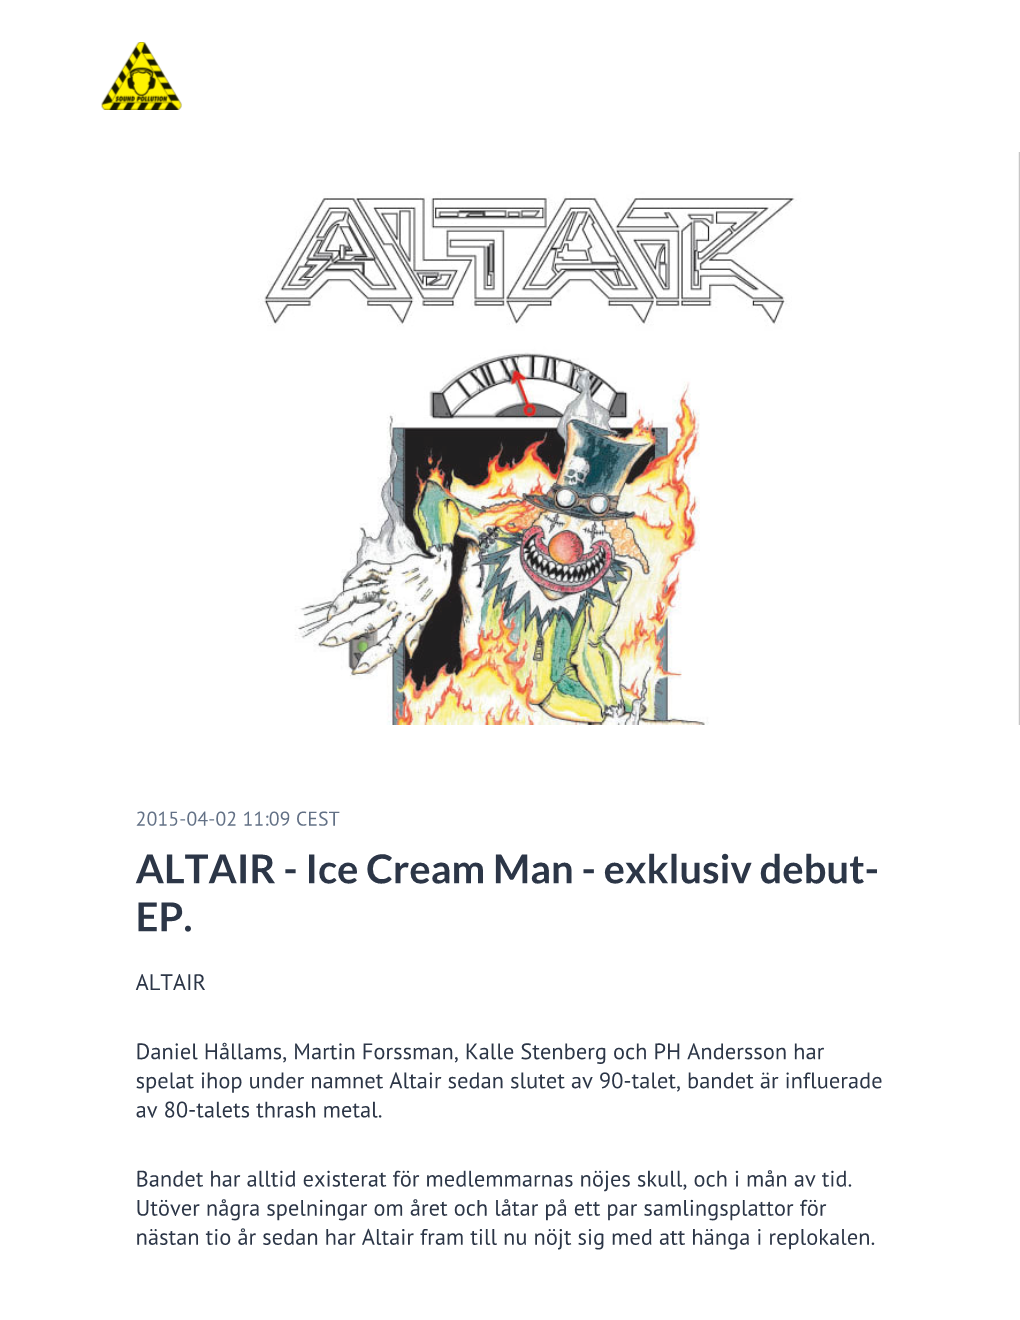 ALTAIR - Ice Cream Man - Exklusiv Debut- EP